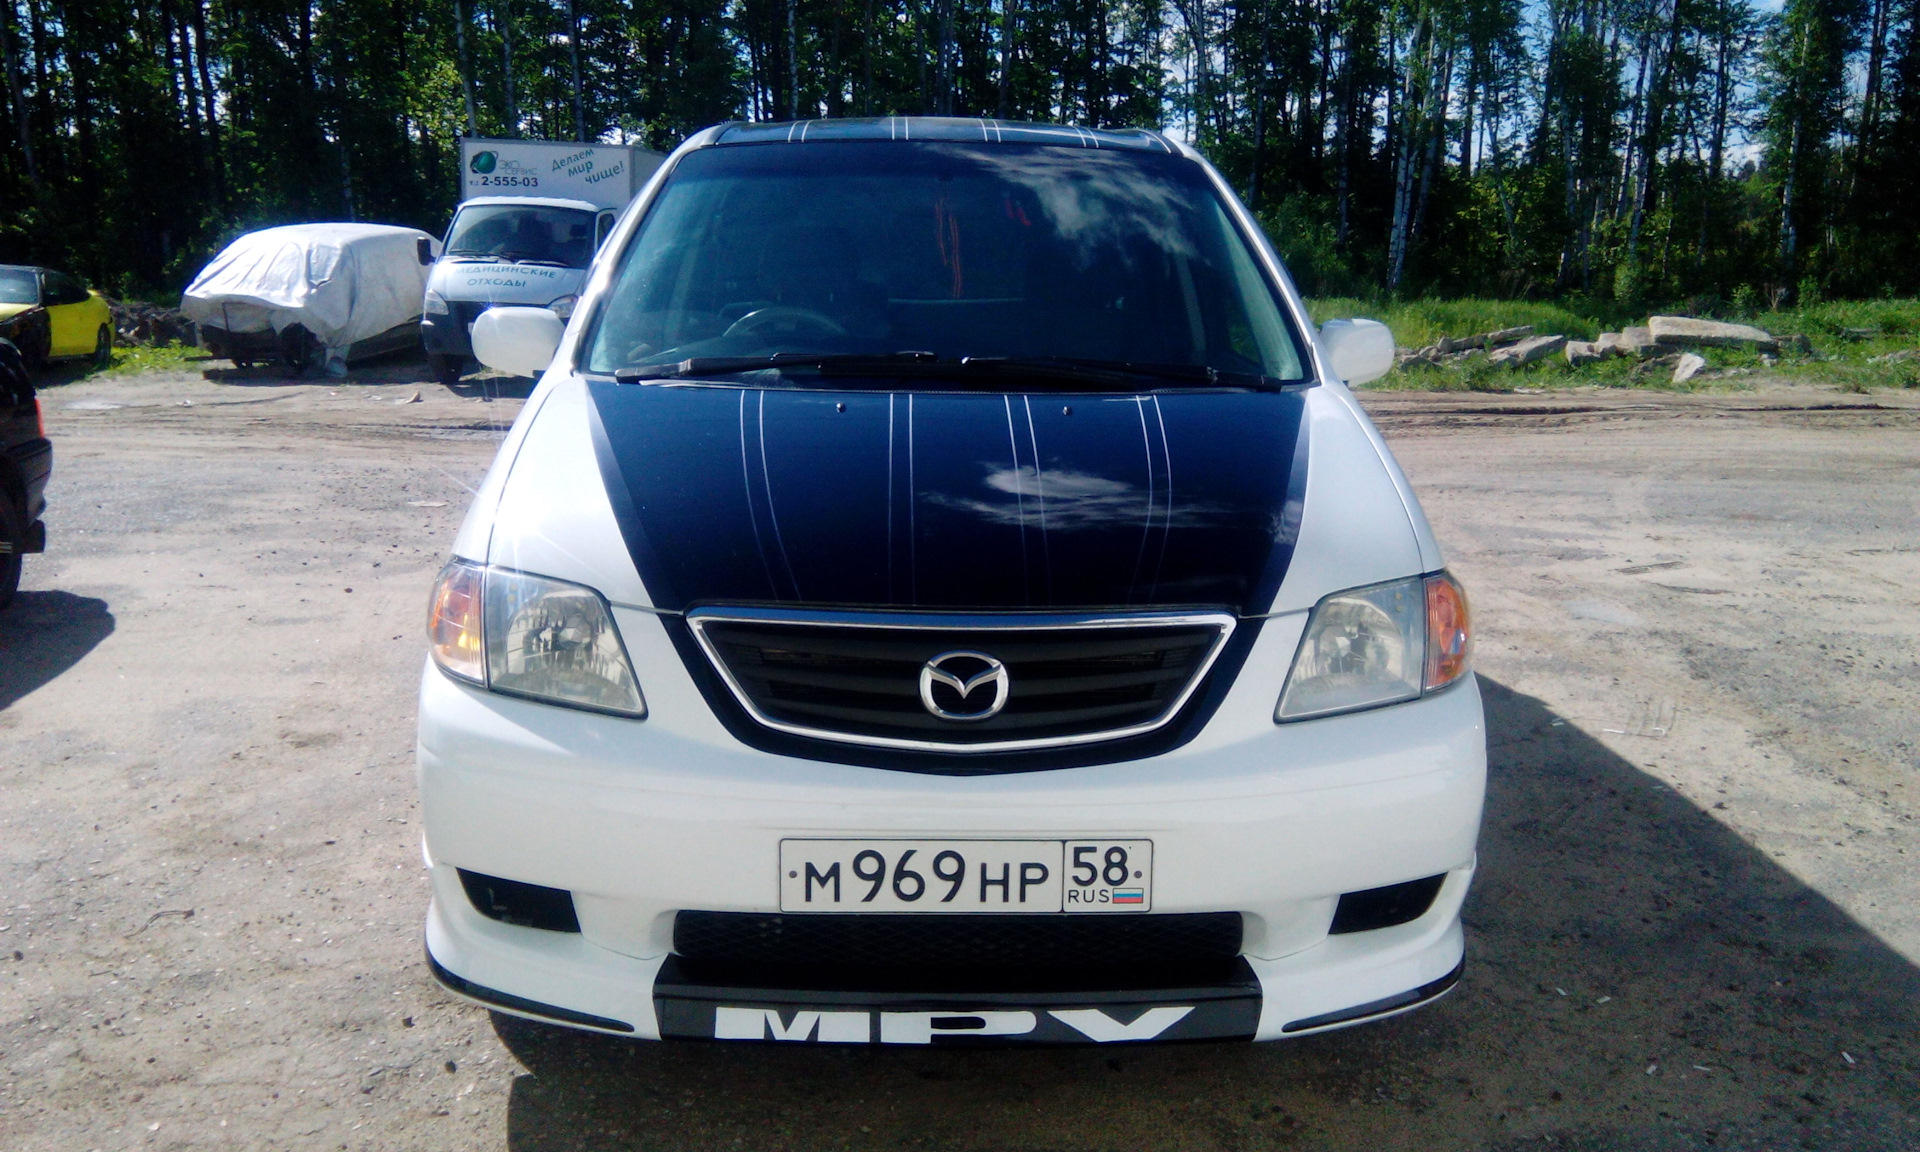 Мазда мпв владивосток. Mazda MPV LX 2004 Москва номера синяя. Мазда MPV клуб. Фото красивые Мазда MPV на больших дисках.